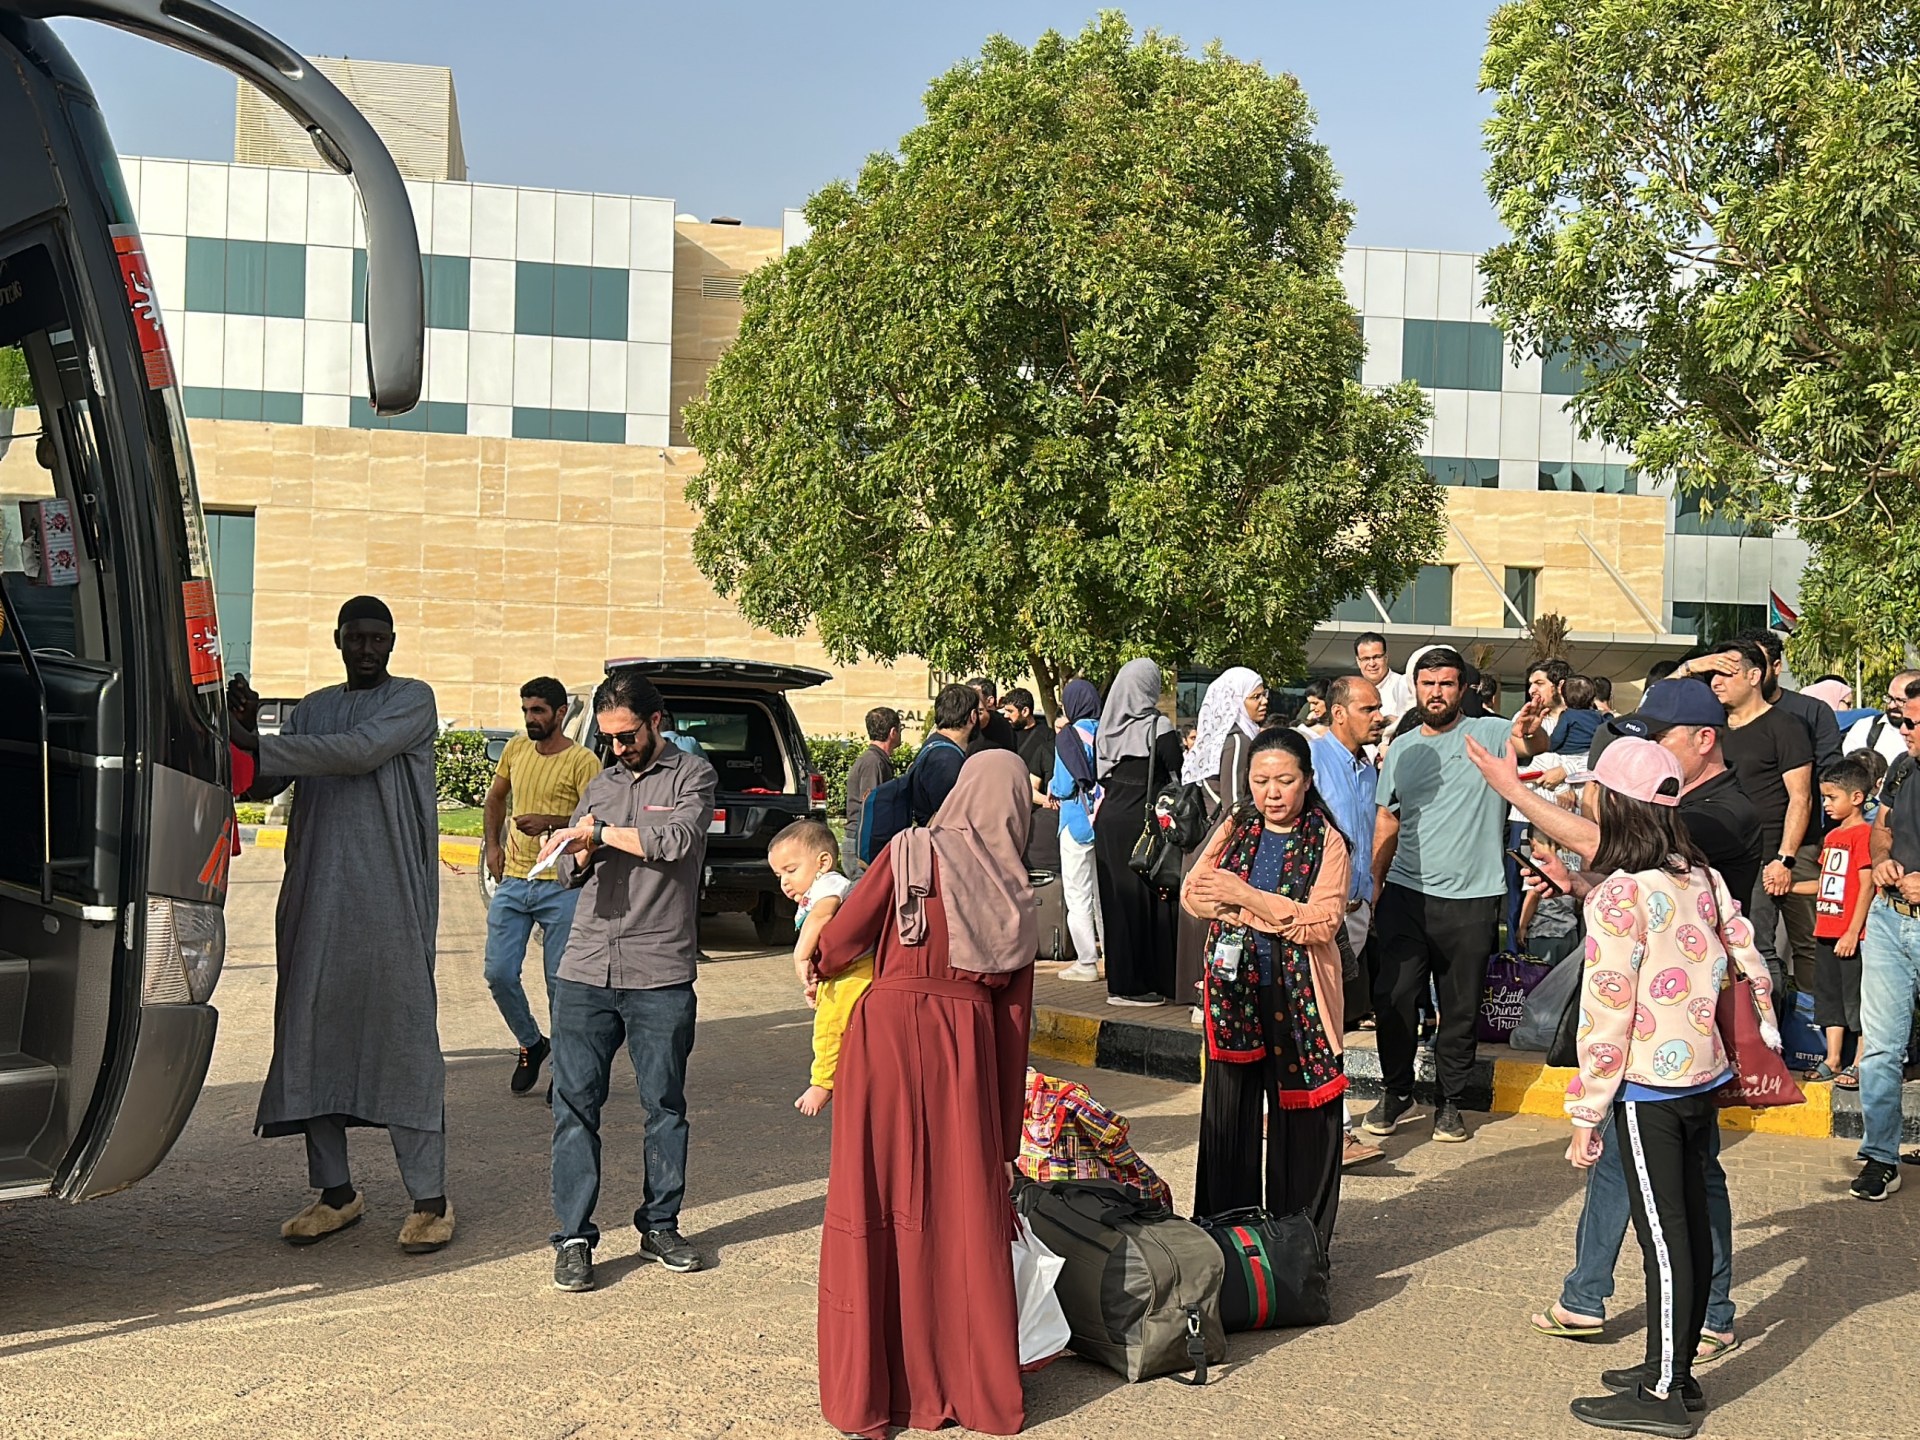 Orang asing dievakuasi saat faksi berperang di Khartoum Sudan |  Berita Konflik